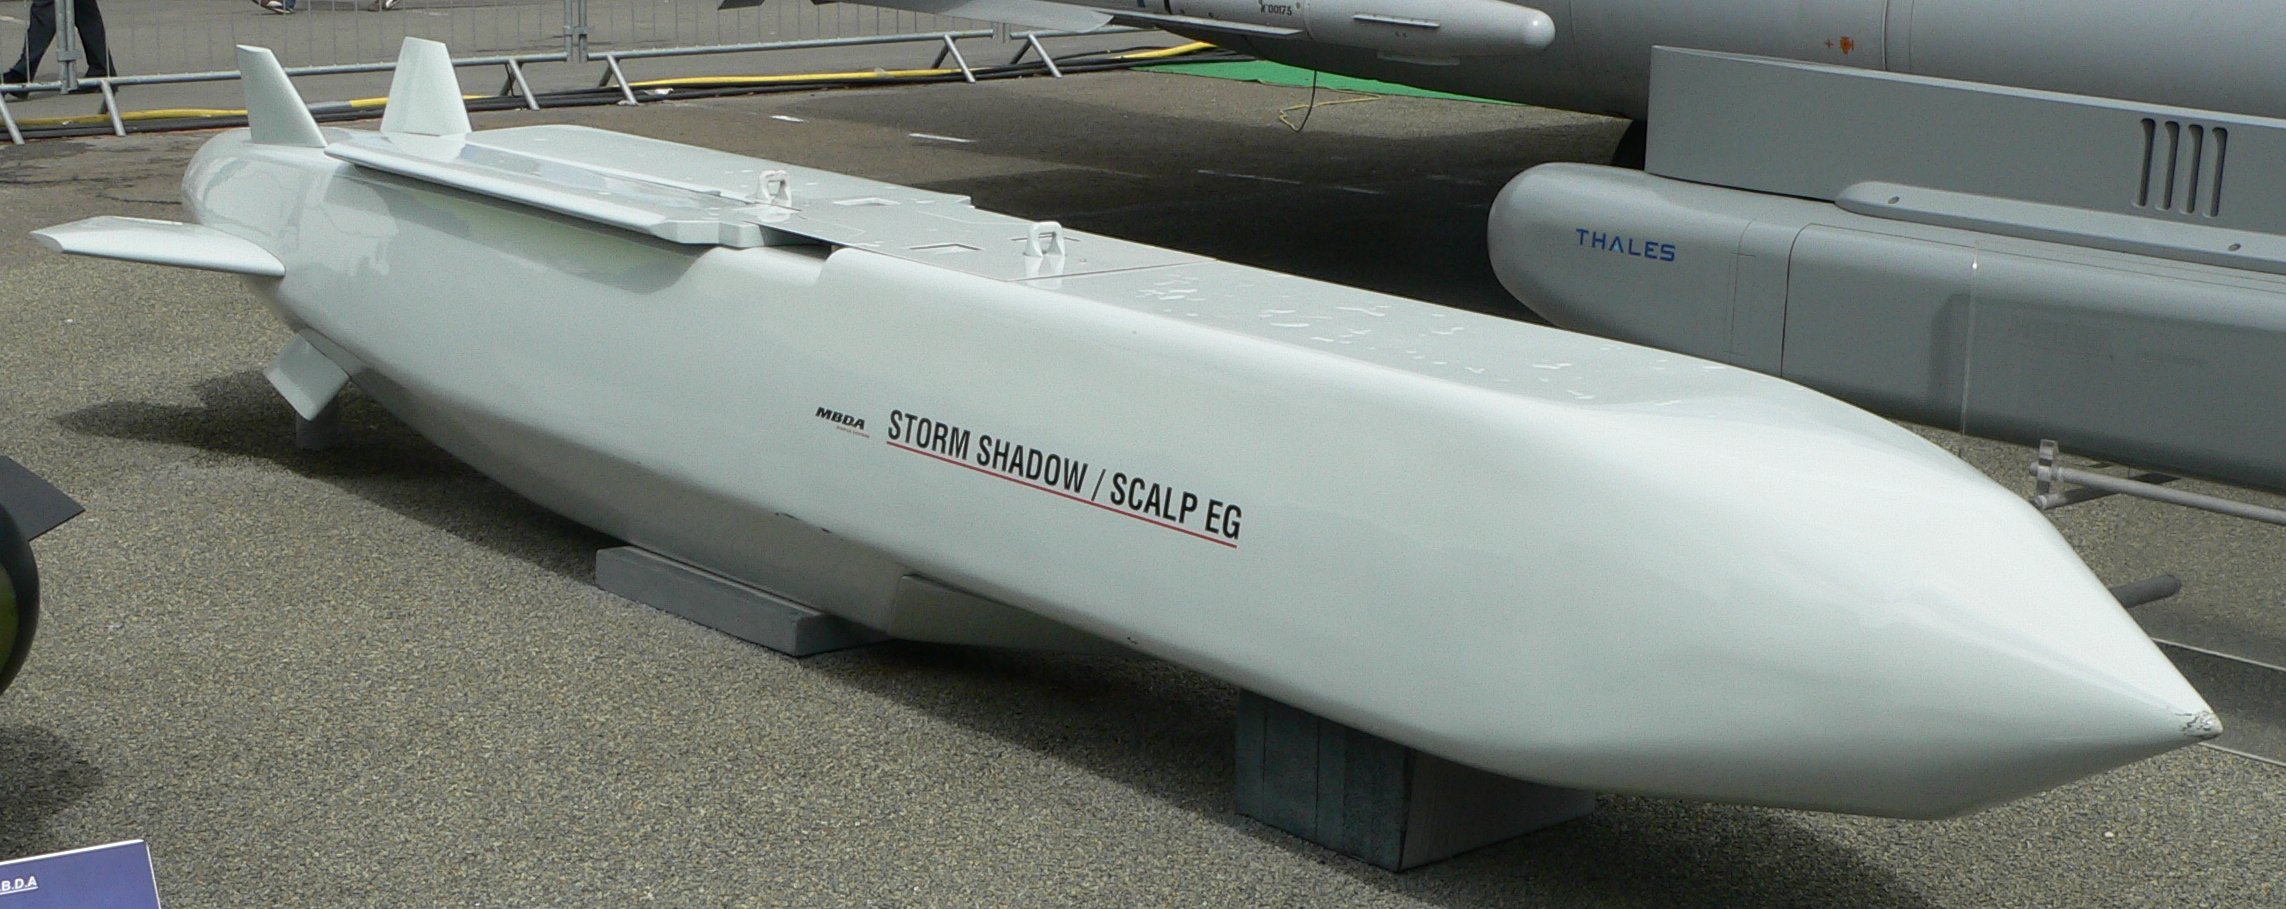 Велика Британія може поставити Україні крилаті ракети Storm Shadow (SCALP), їх запускають із літака, вони можуть вражати цілі на відстані близько 600 км